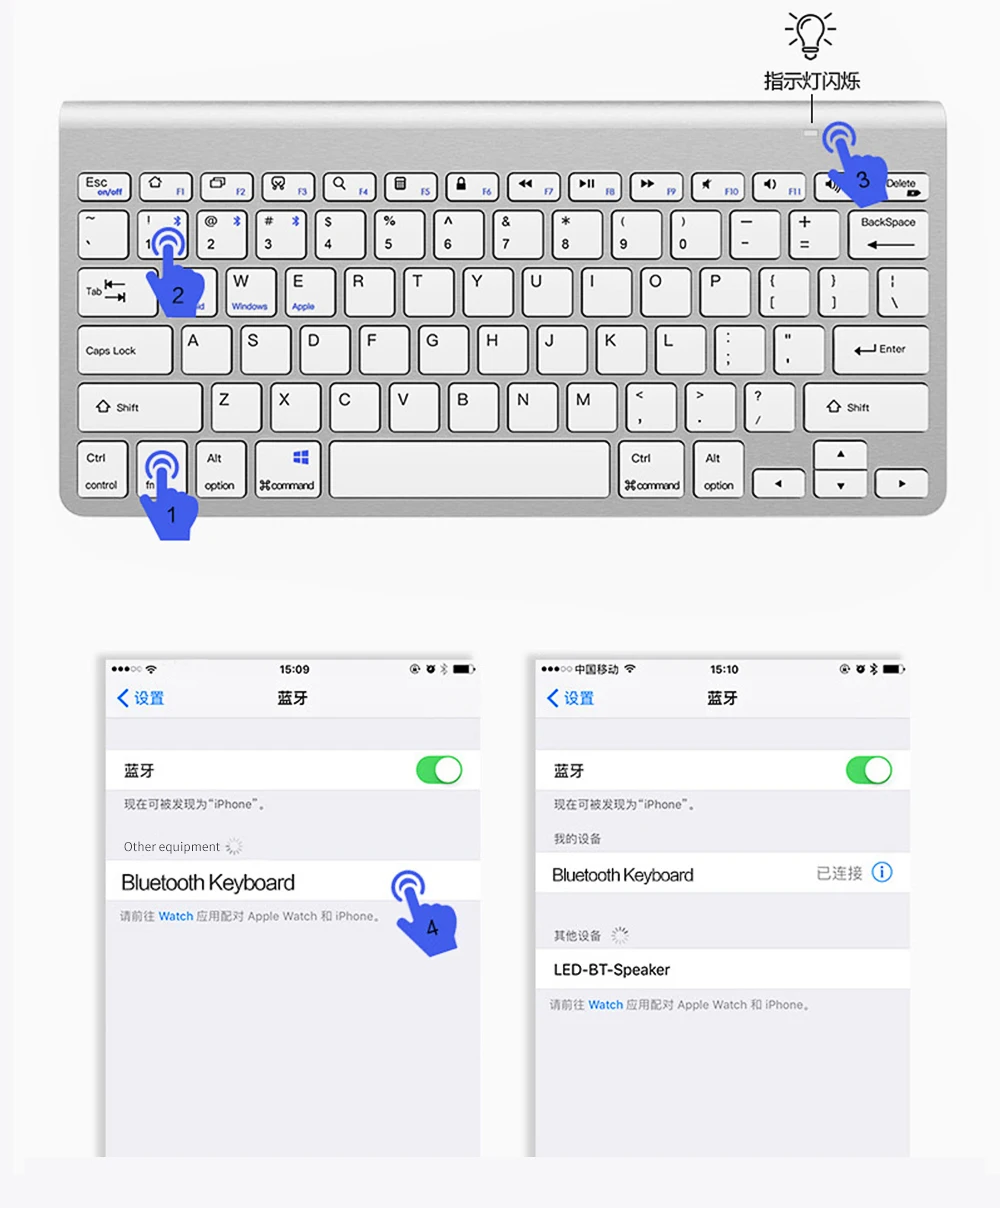 SANLEPUS ультра-тонкая Bluetooth клавиатура беспроводная клавиатура компьютера мини для телефона планшета ноутбука iPad iPhone samsung IOS Android